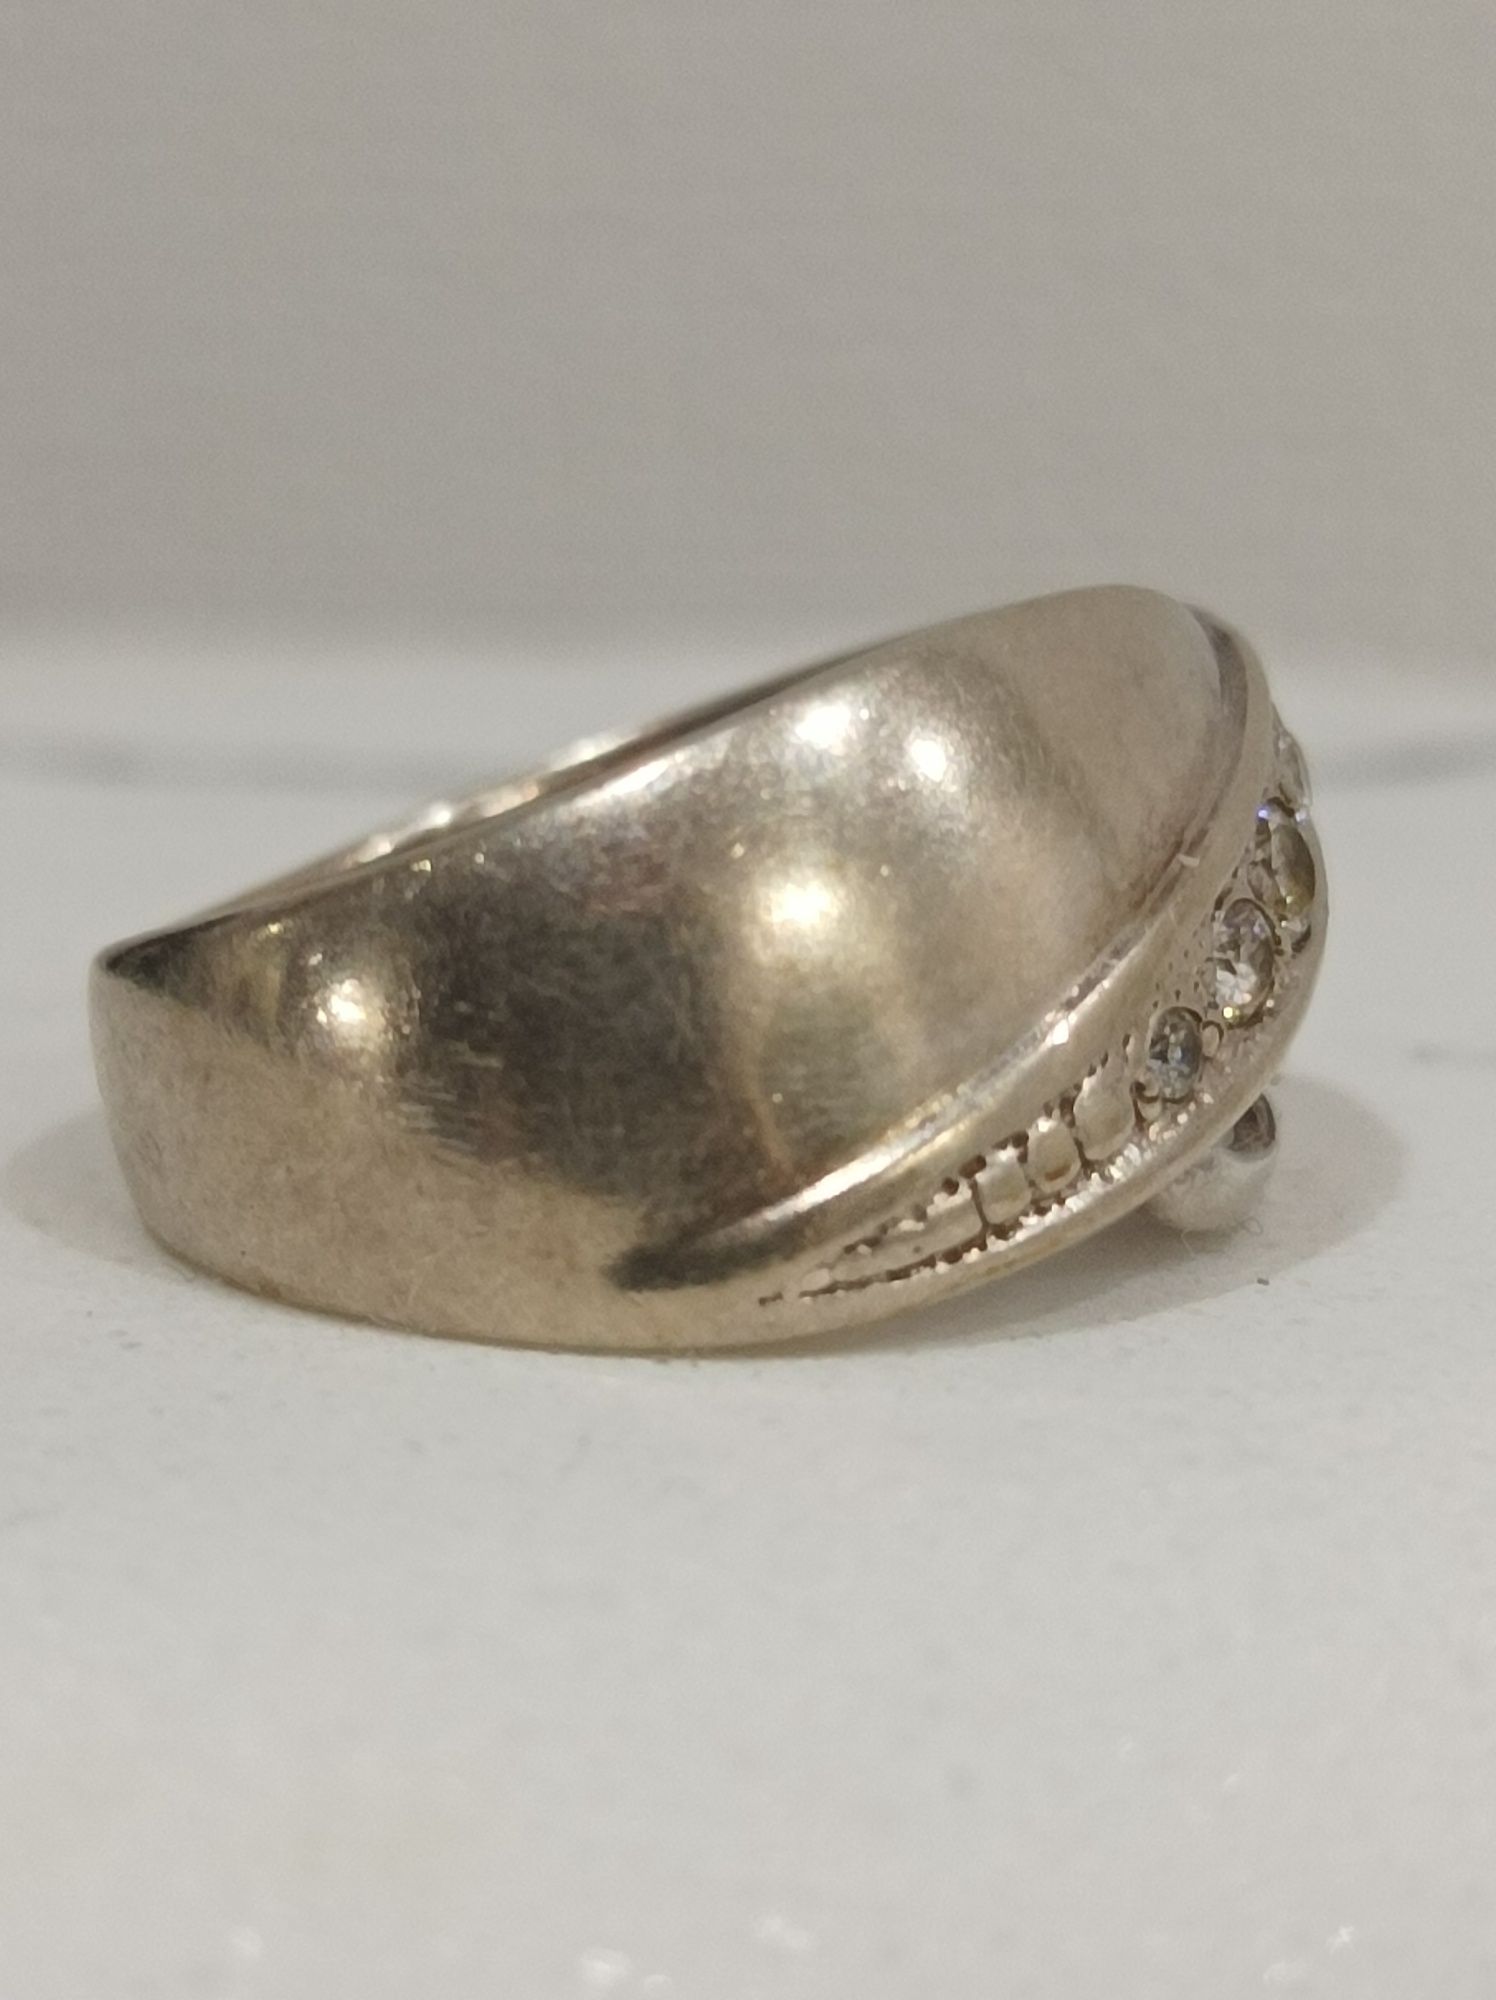 Продам кольцо советских времён..Серебро 875